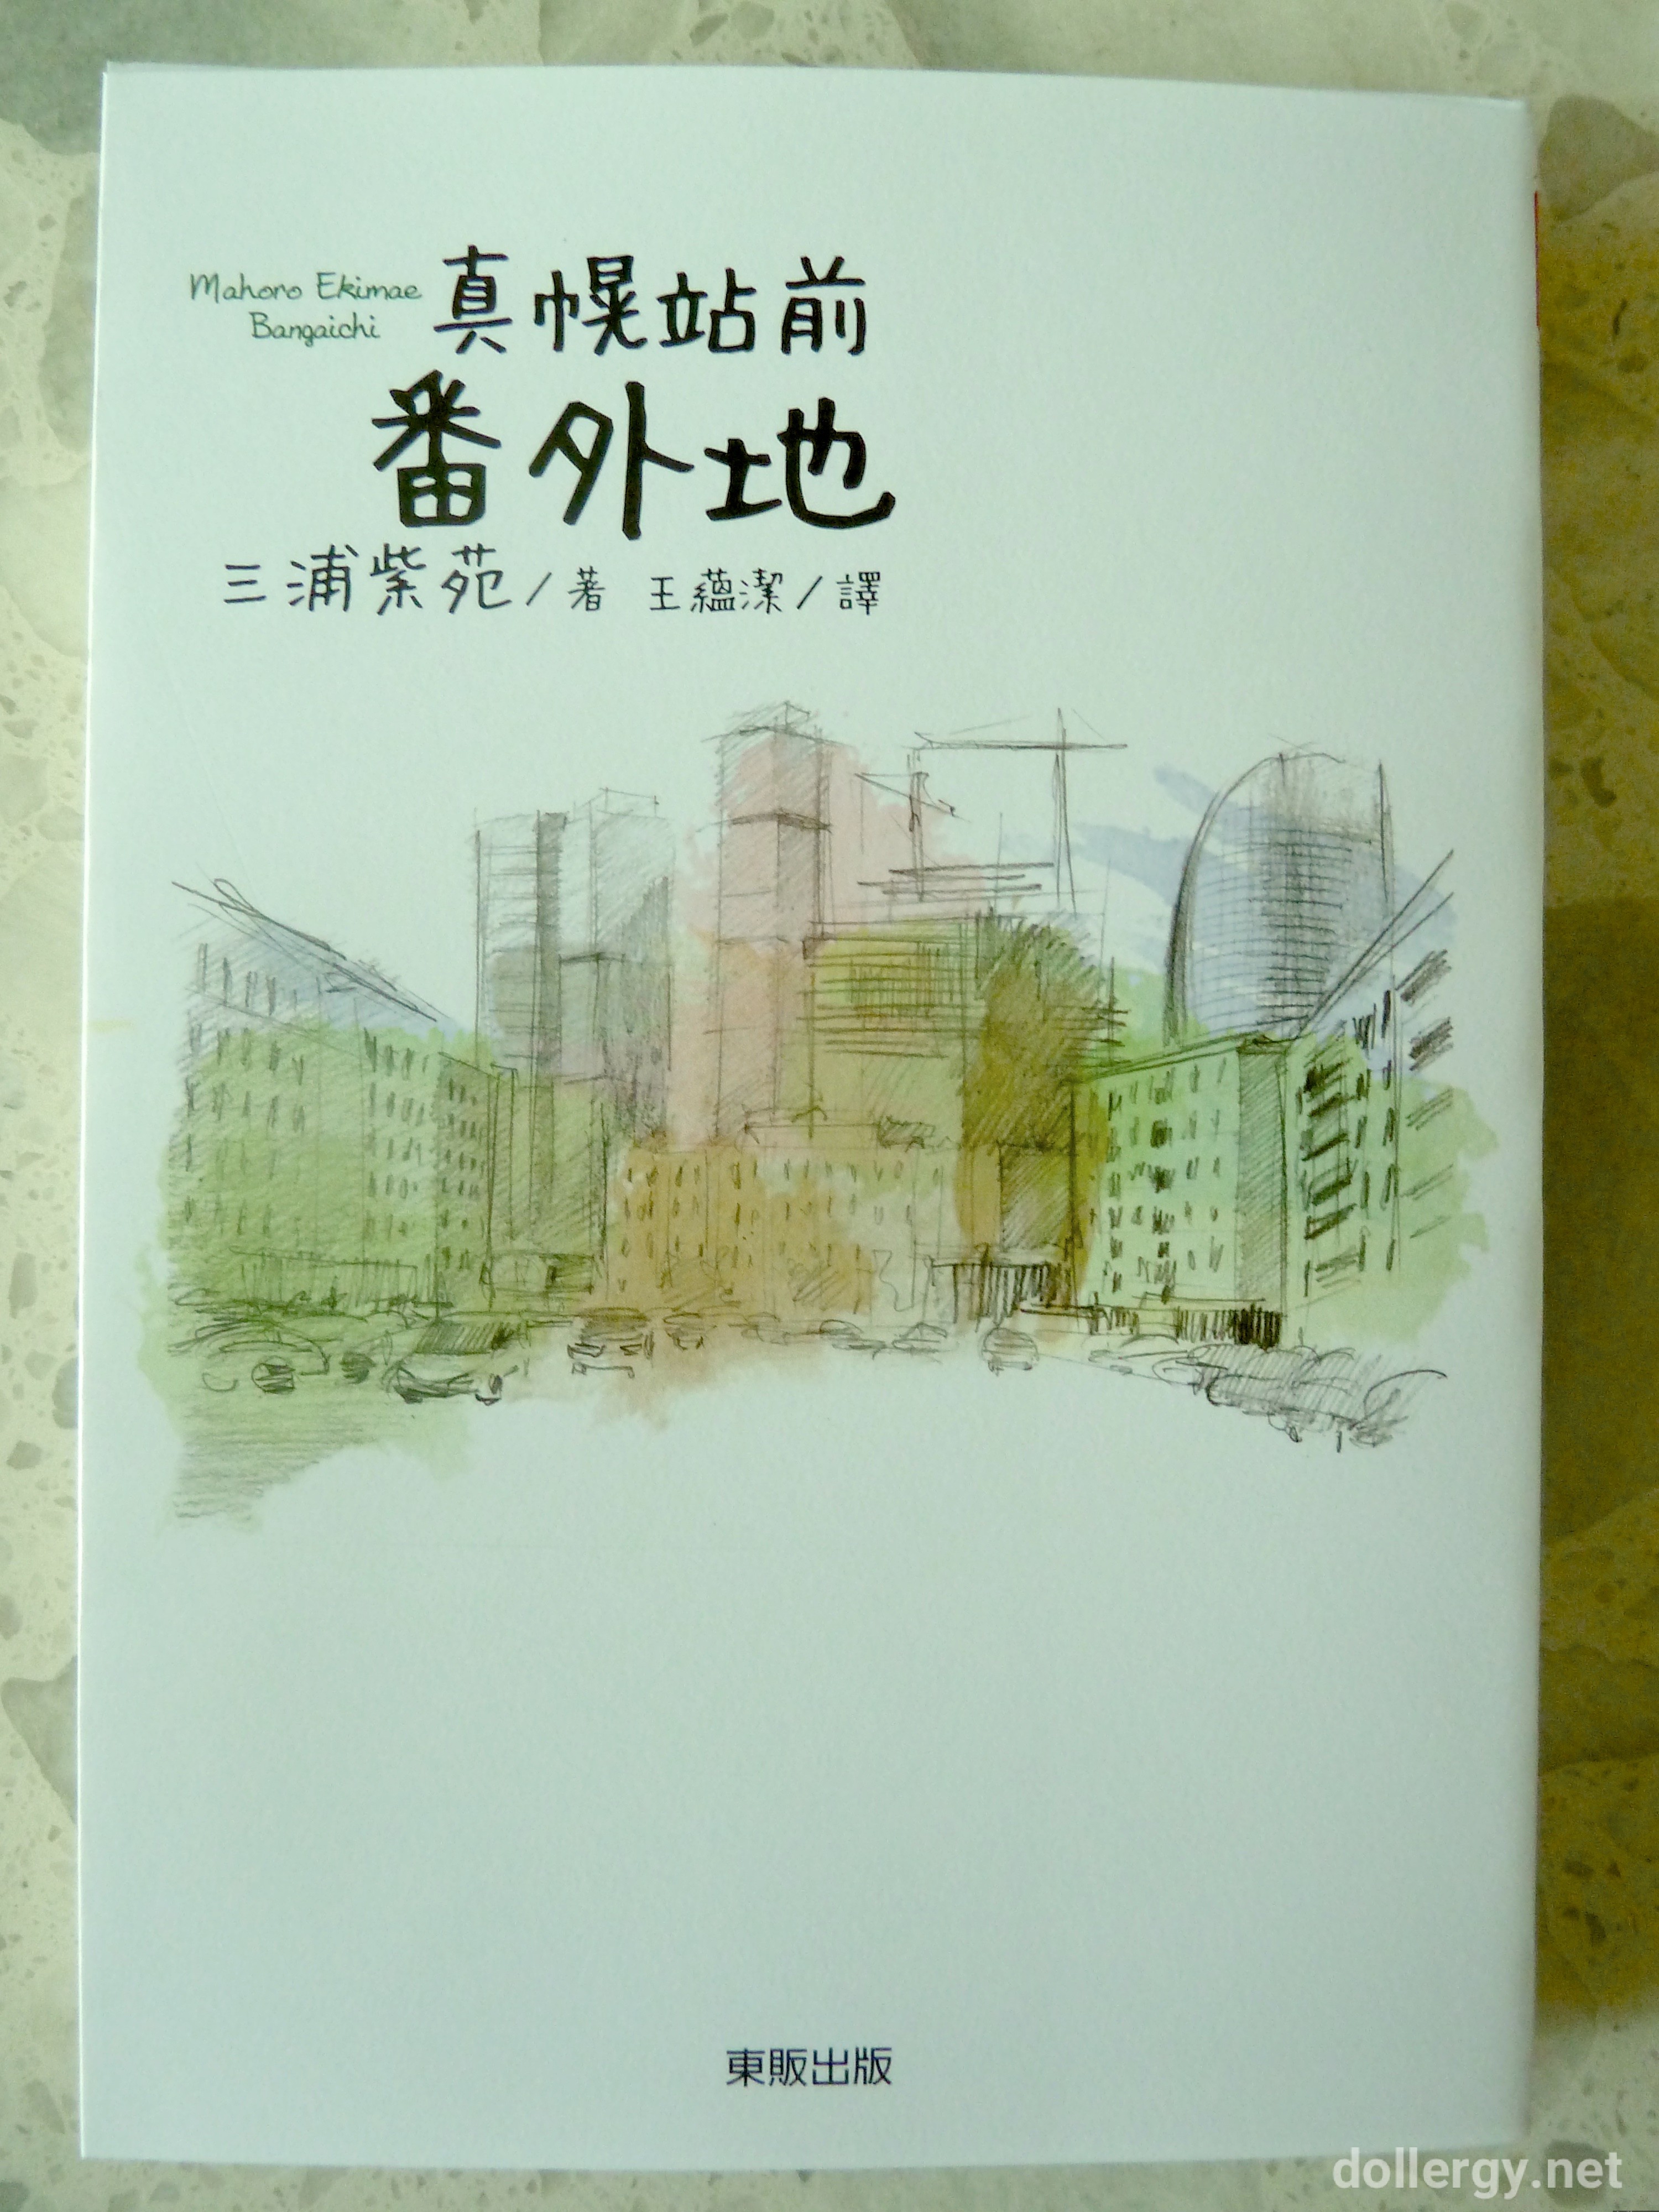 真幌站前番外地 Book Cover